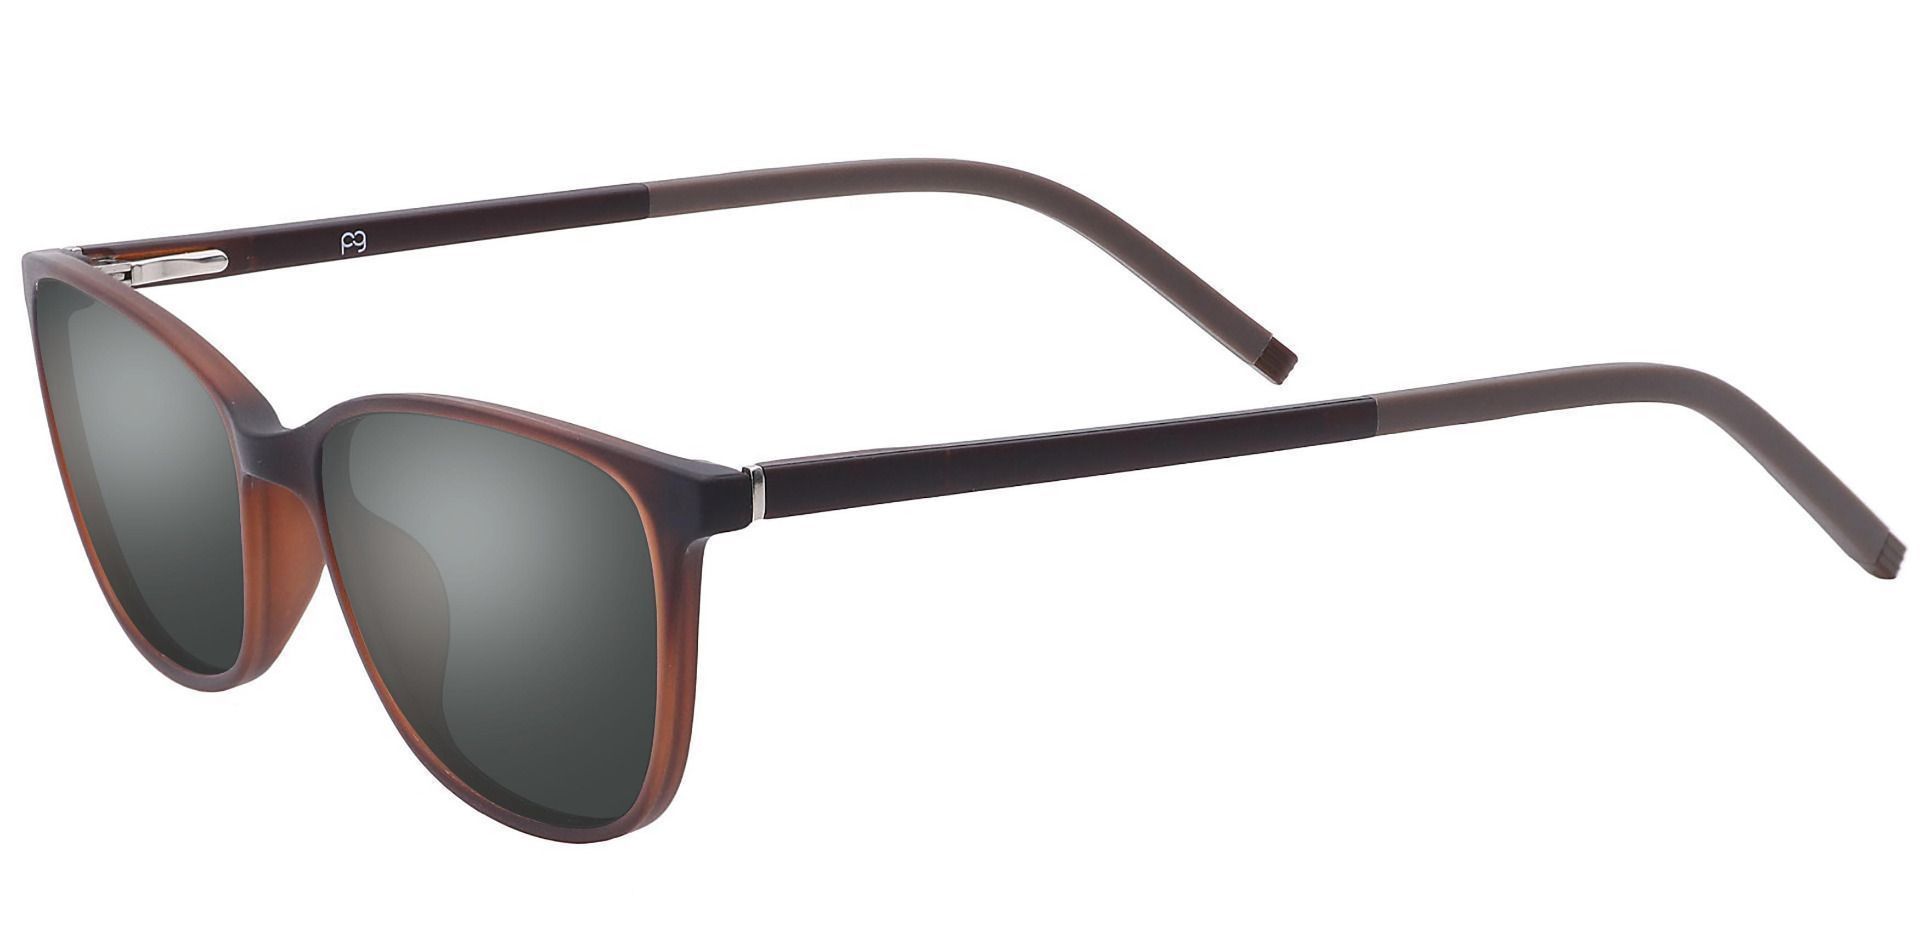 Danica Square Non-Rx Sunglasses - Brown Frame With Gray Lenses